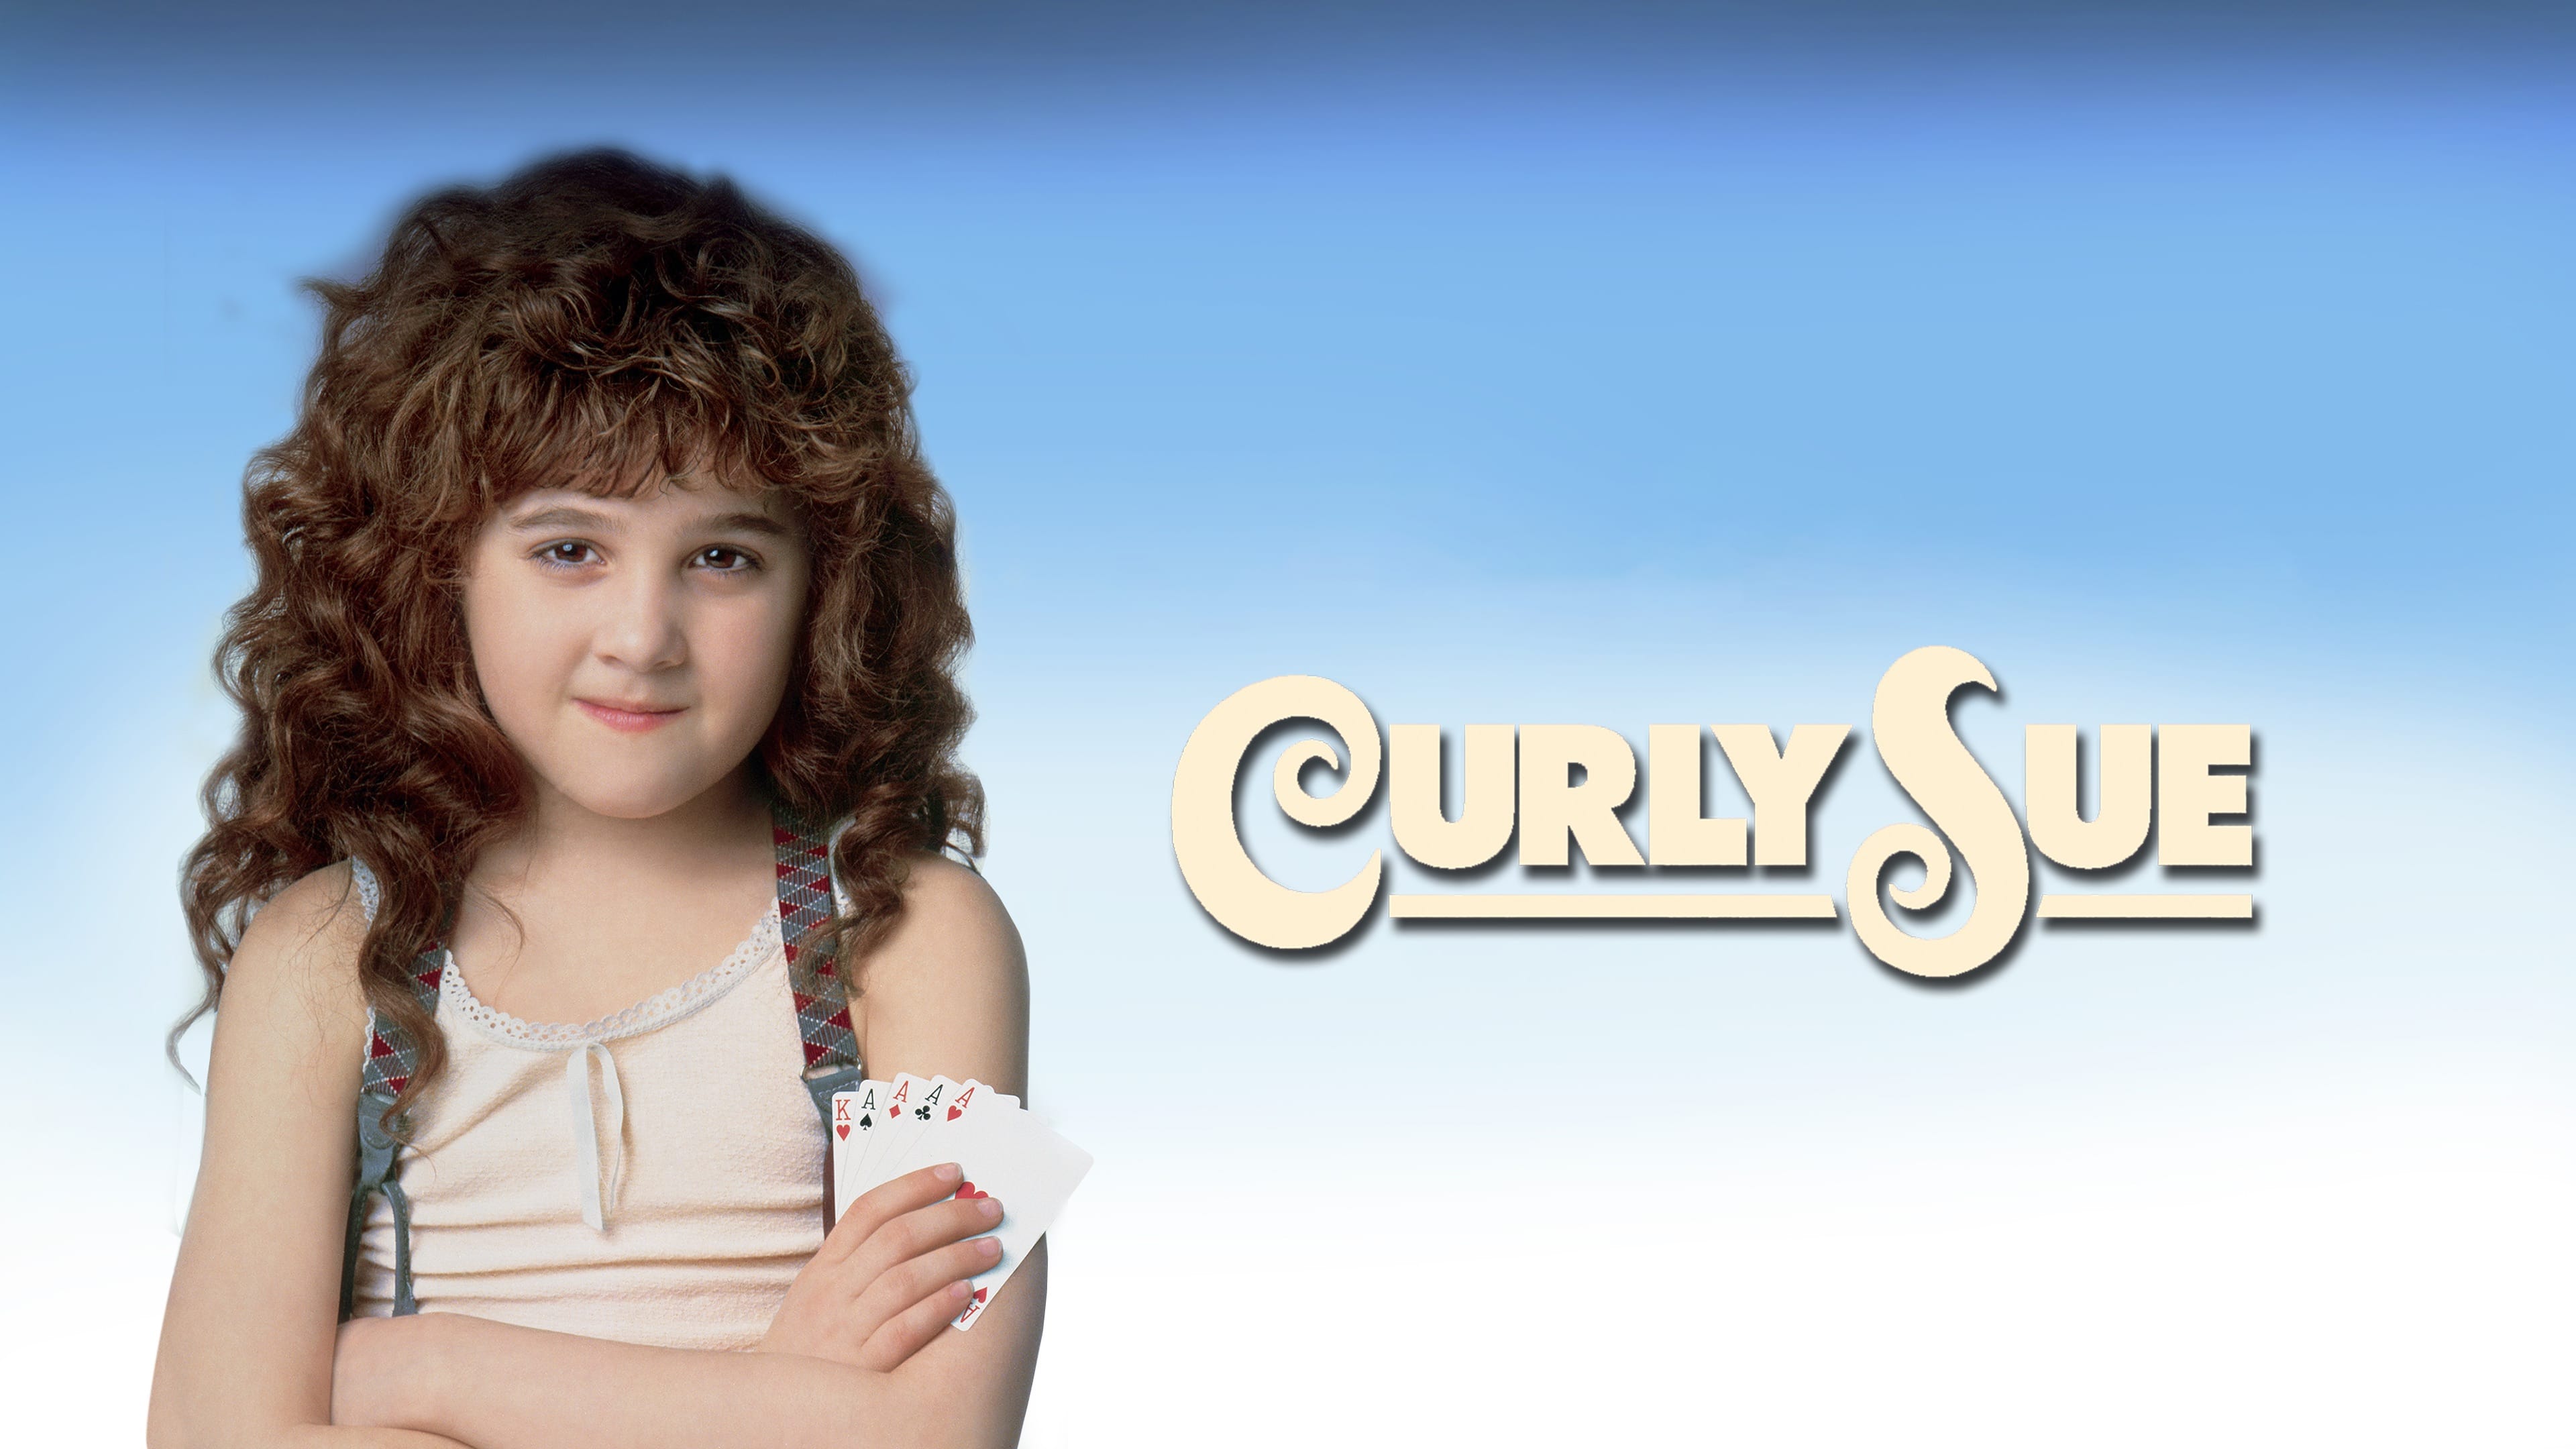 Curly Sue - Ein Lockenkopf  sorgt für Wirbel